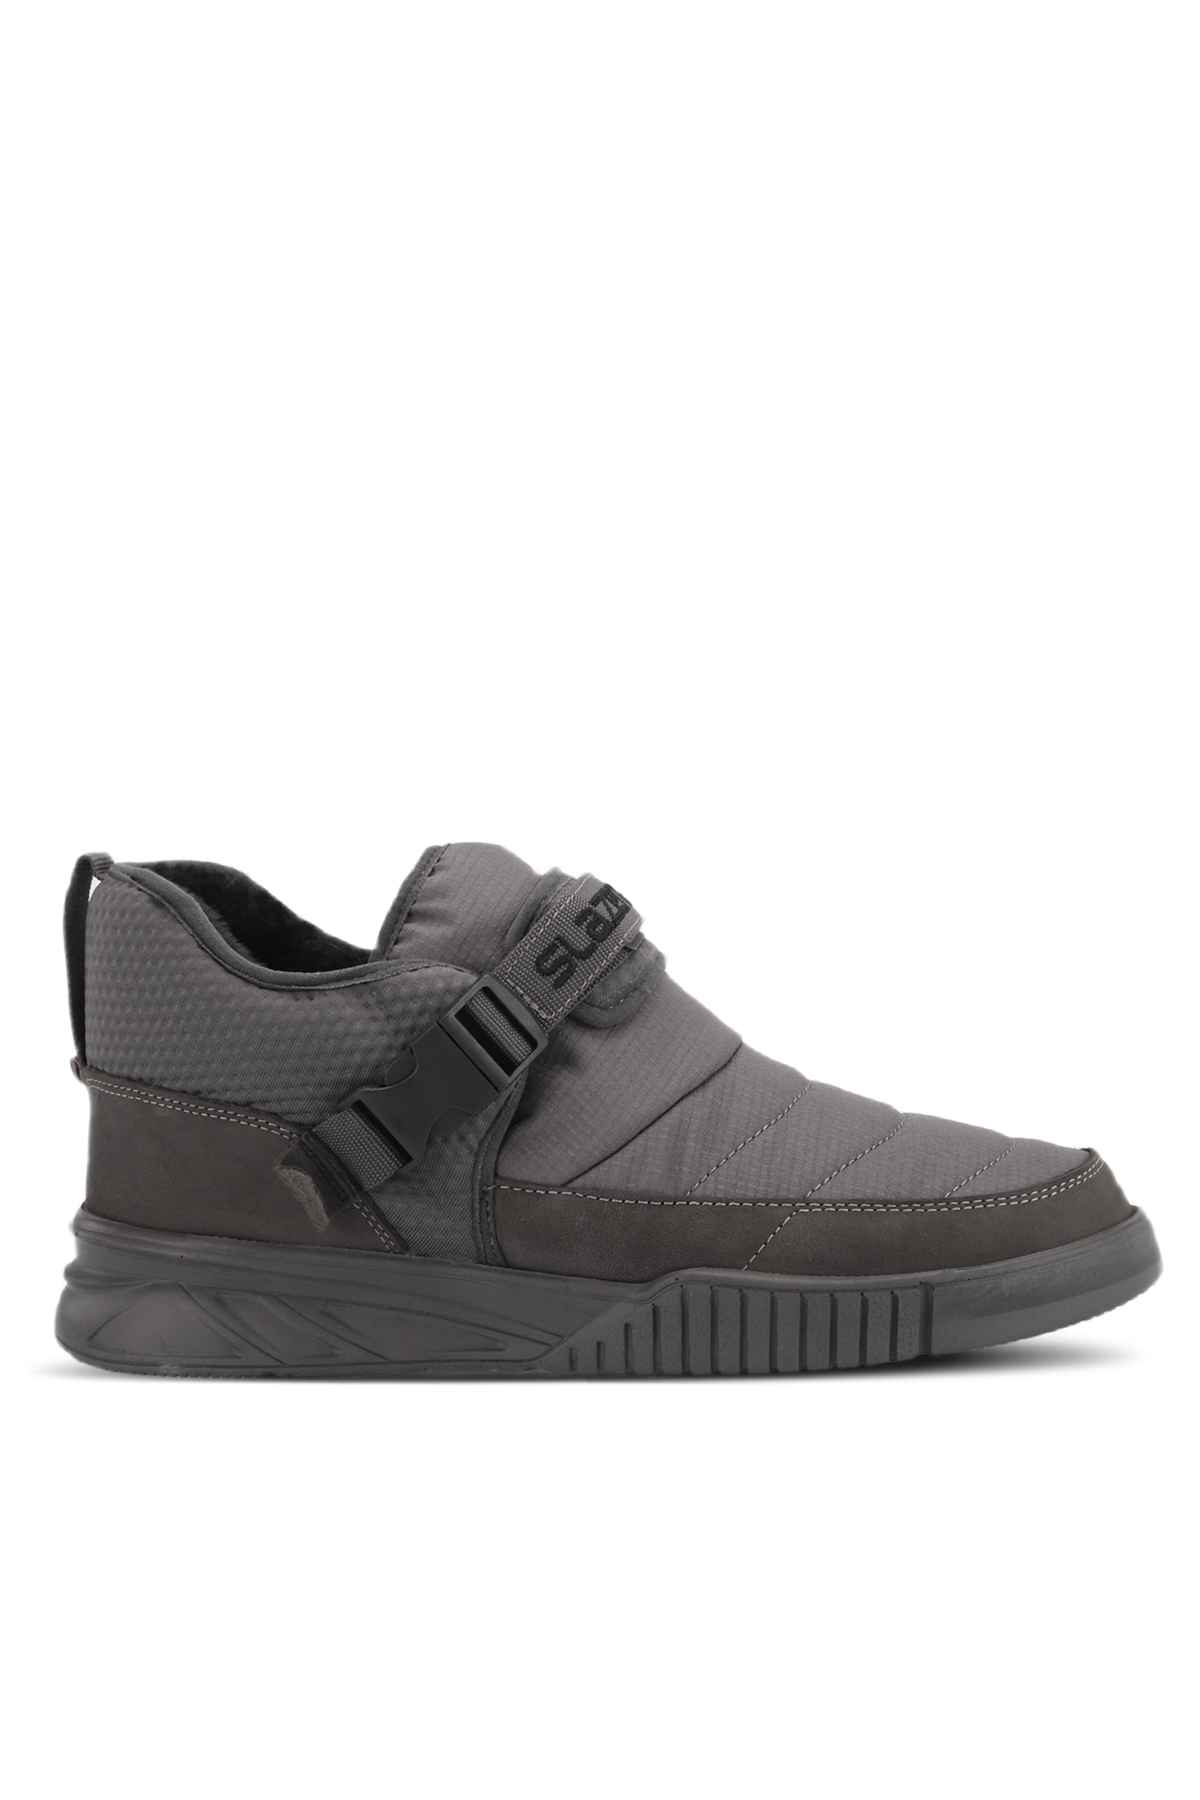 NEWYORK I Sneaker Shoes Unisex Black